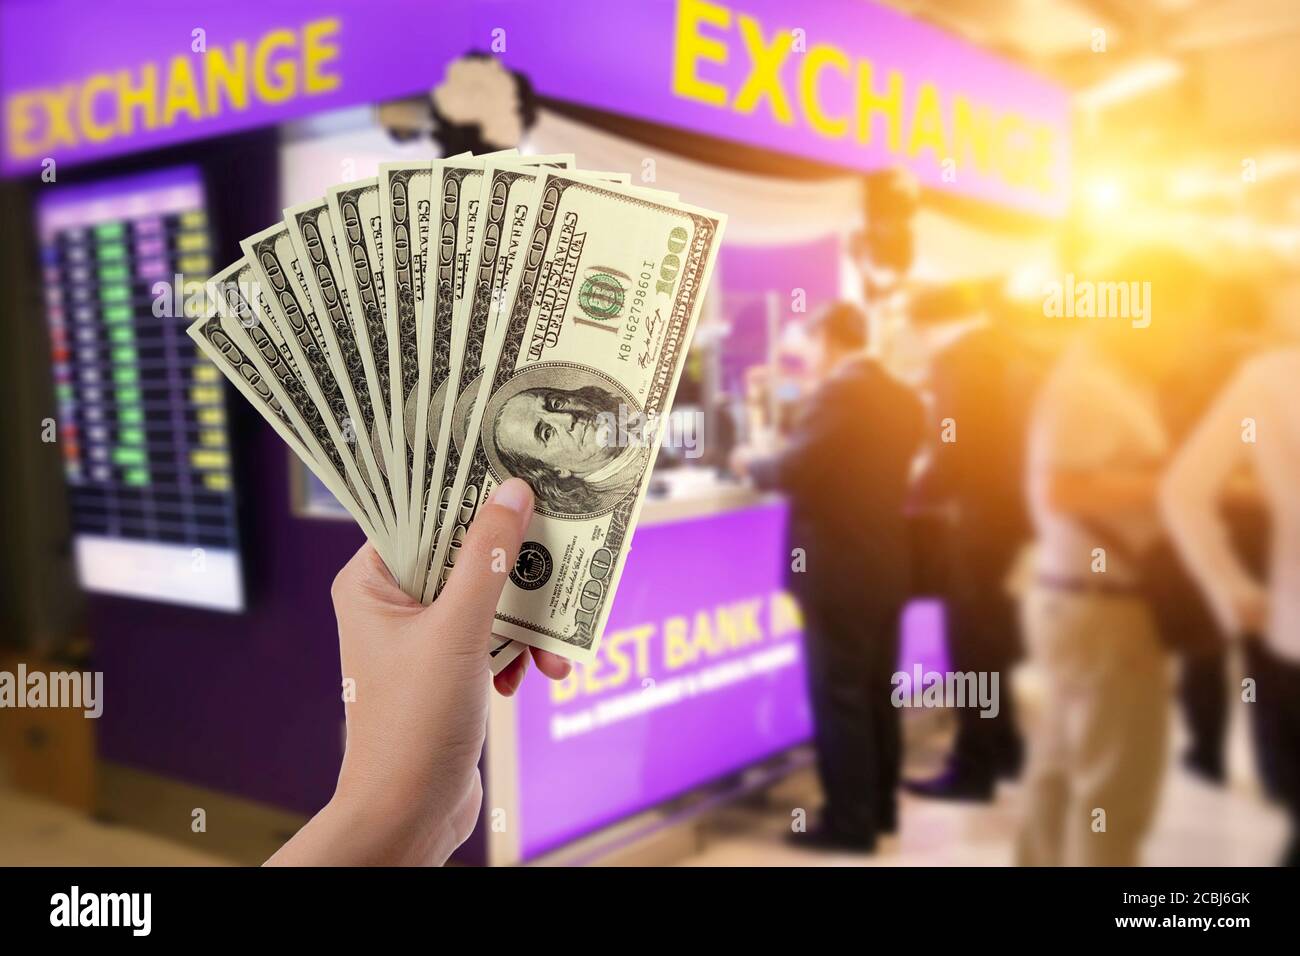 Menschen, Rückzug, Sparen, Finanzen, Währungsumrechnung und Geldwechsel-Konzept - Hände mit US-Dollar-Geld mit Unschärfe-Austausch-Stand Hintergrund Stockfoto